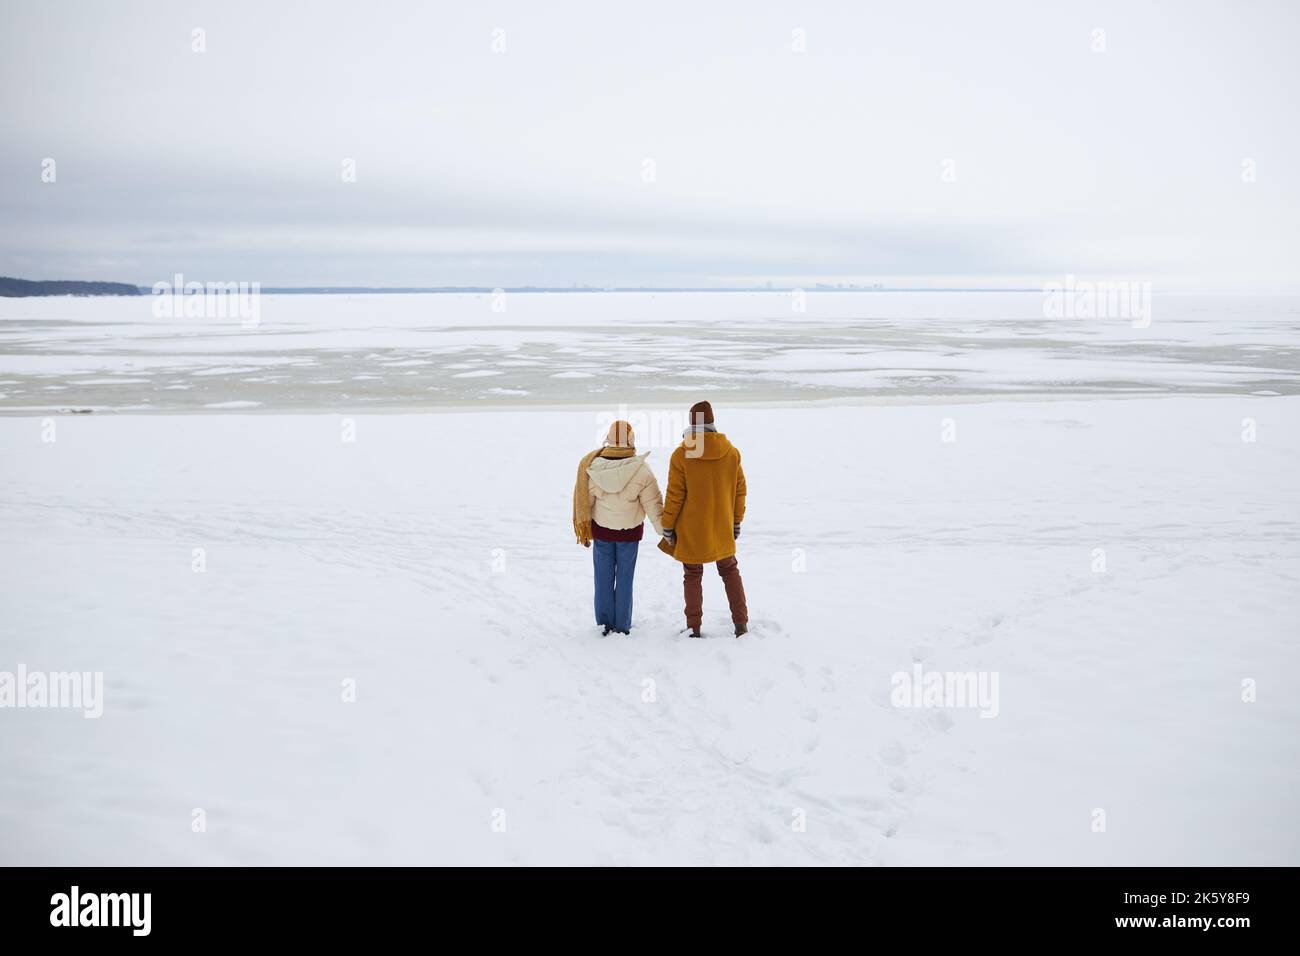 Photo grand angle d'un jeune couple debout au bord de la mer gelée et surplombant un paysage hivernal minimal, espace de copie Banque D'Images